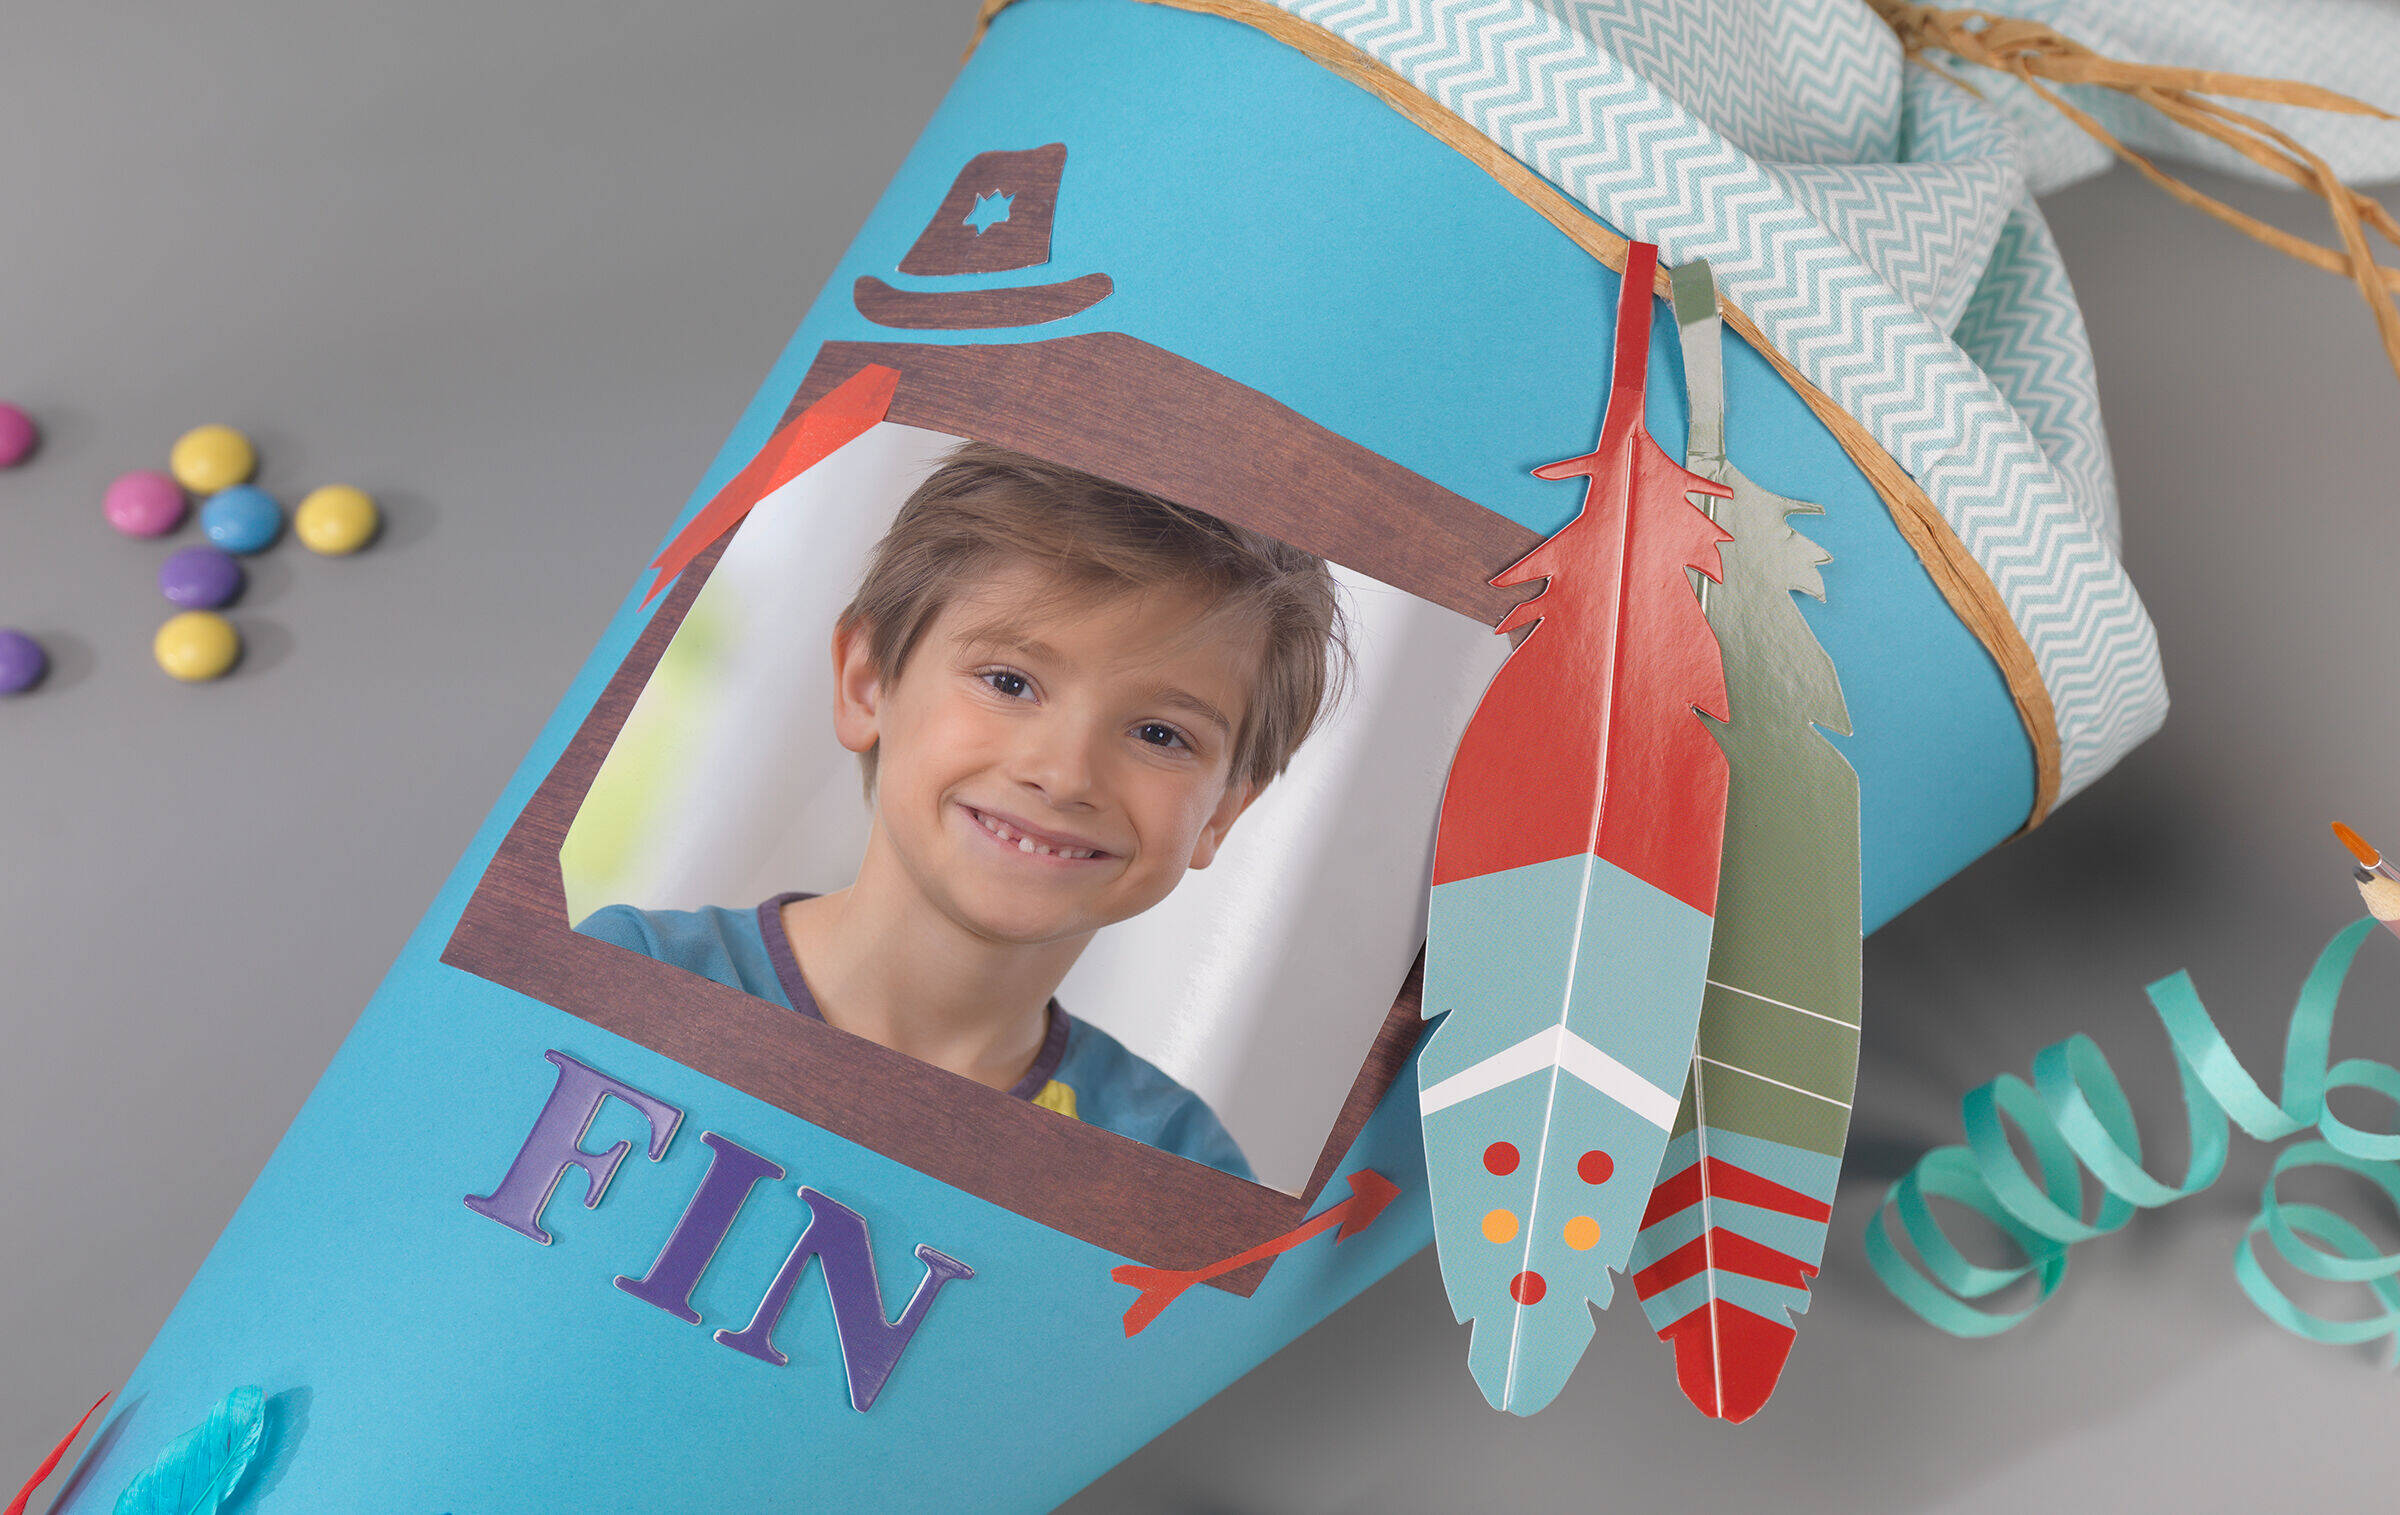 Die Detailaufnahme einer hellblauen Schultüte zeigt einen Fotosticker mit dem Motiv eines Jungen, das von bunten Papierfedern und dem Namen "Fin" eingerahmt wird.